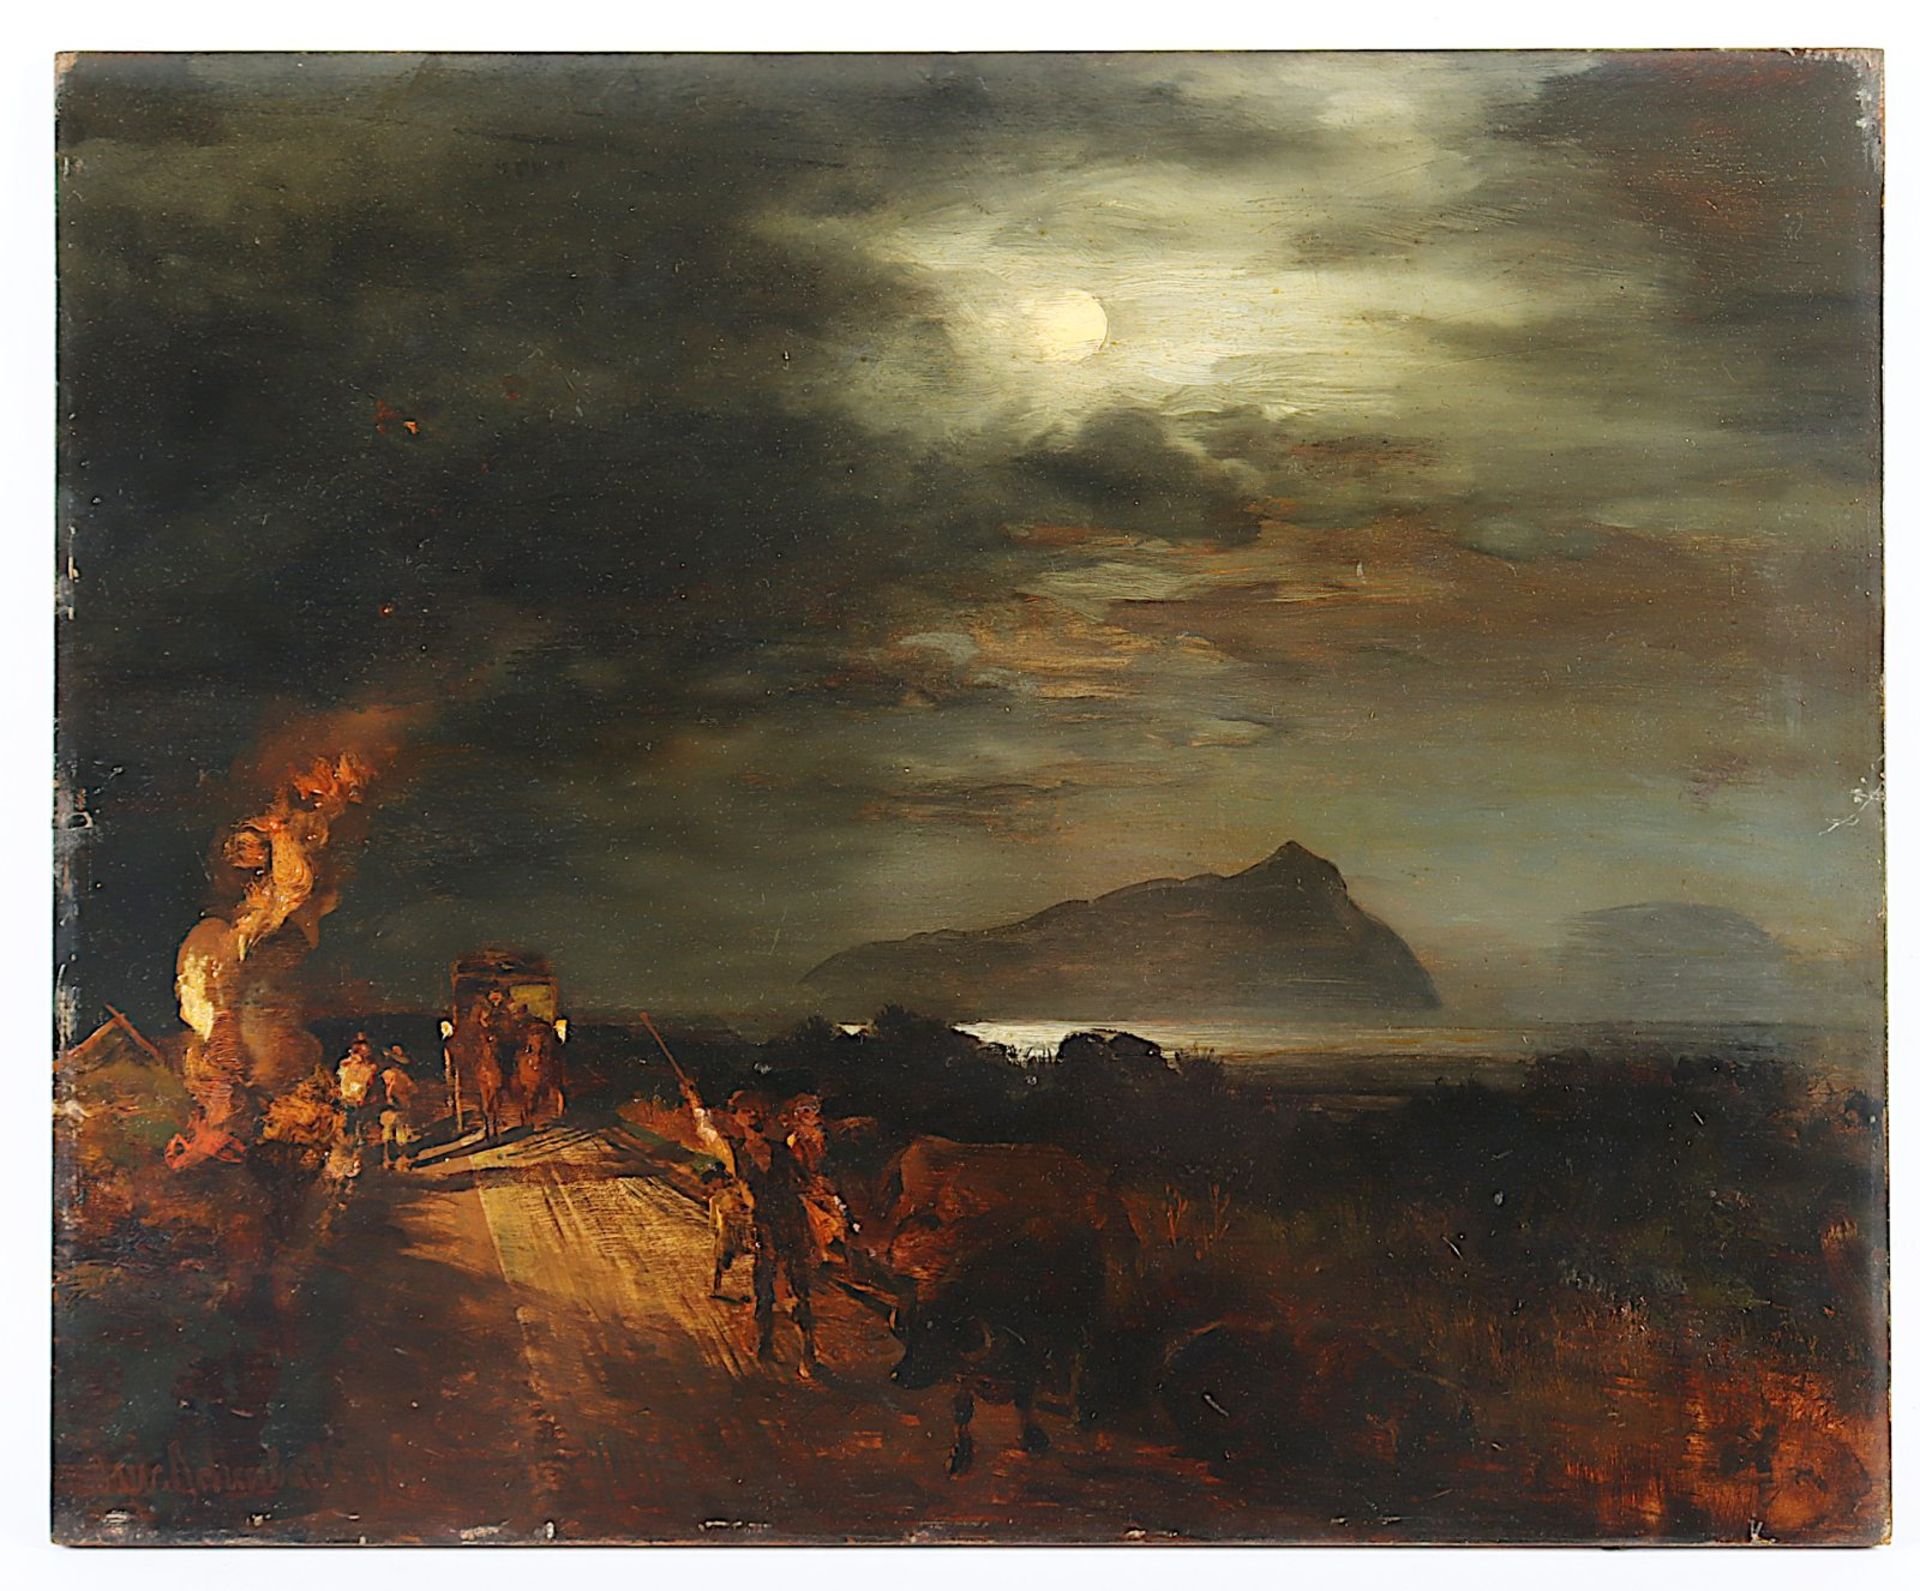 Achenbach, Oswald (1827-1905), "Abend in der Campagne", R.